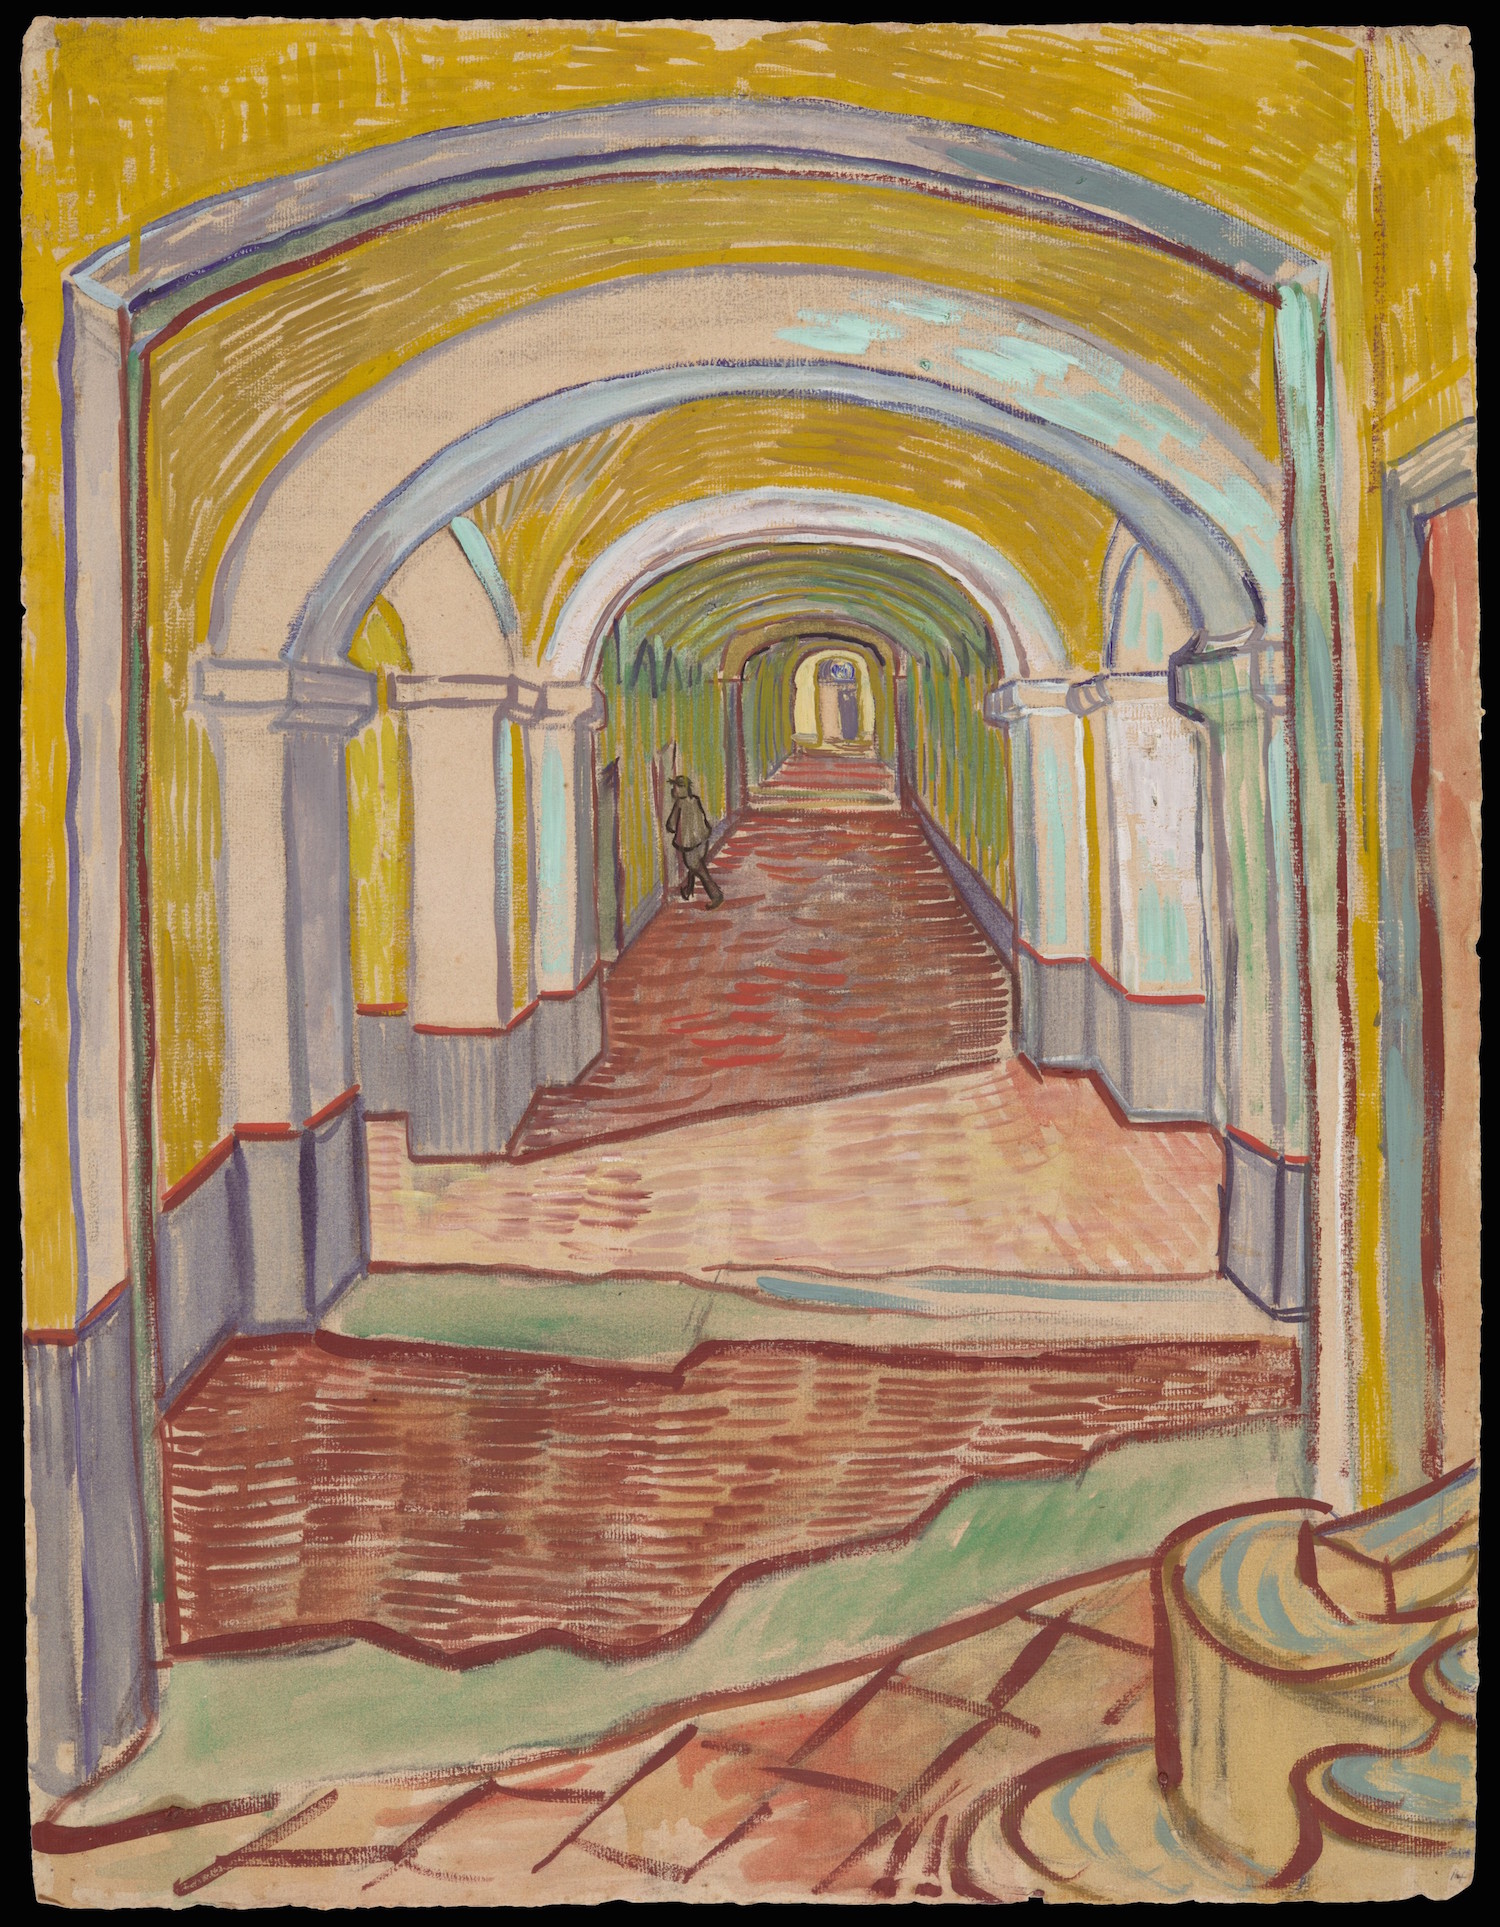 Couloir de l'hospice Saint-Paul by Vincent van Gogh - 1889 - 65.1 x 49.1 cm Metropolitan Museum of Art